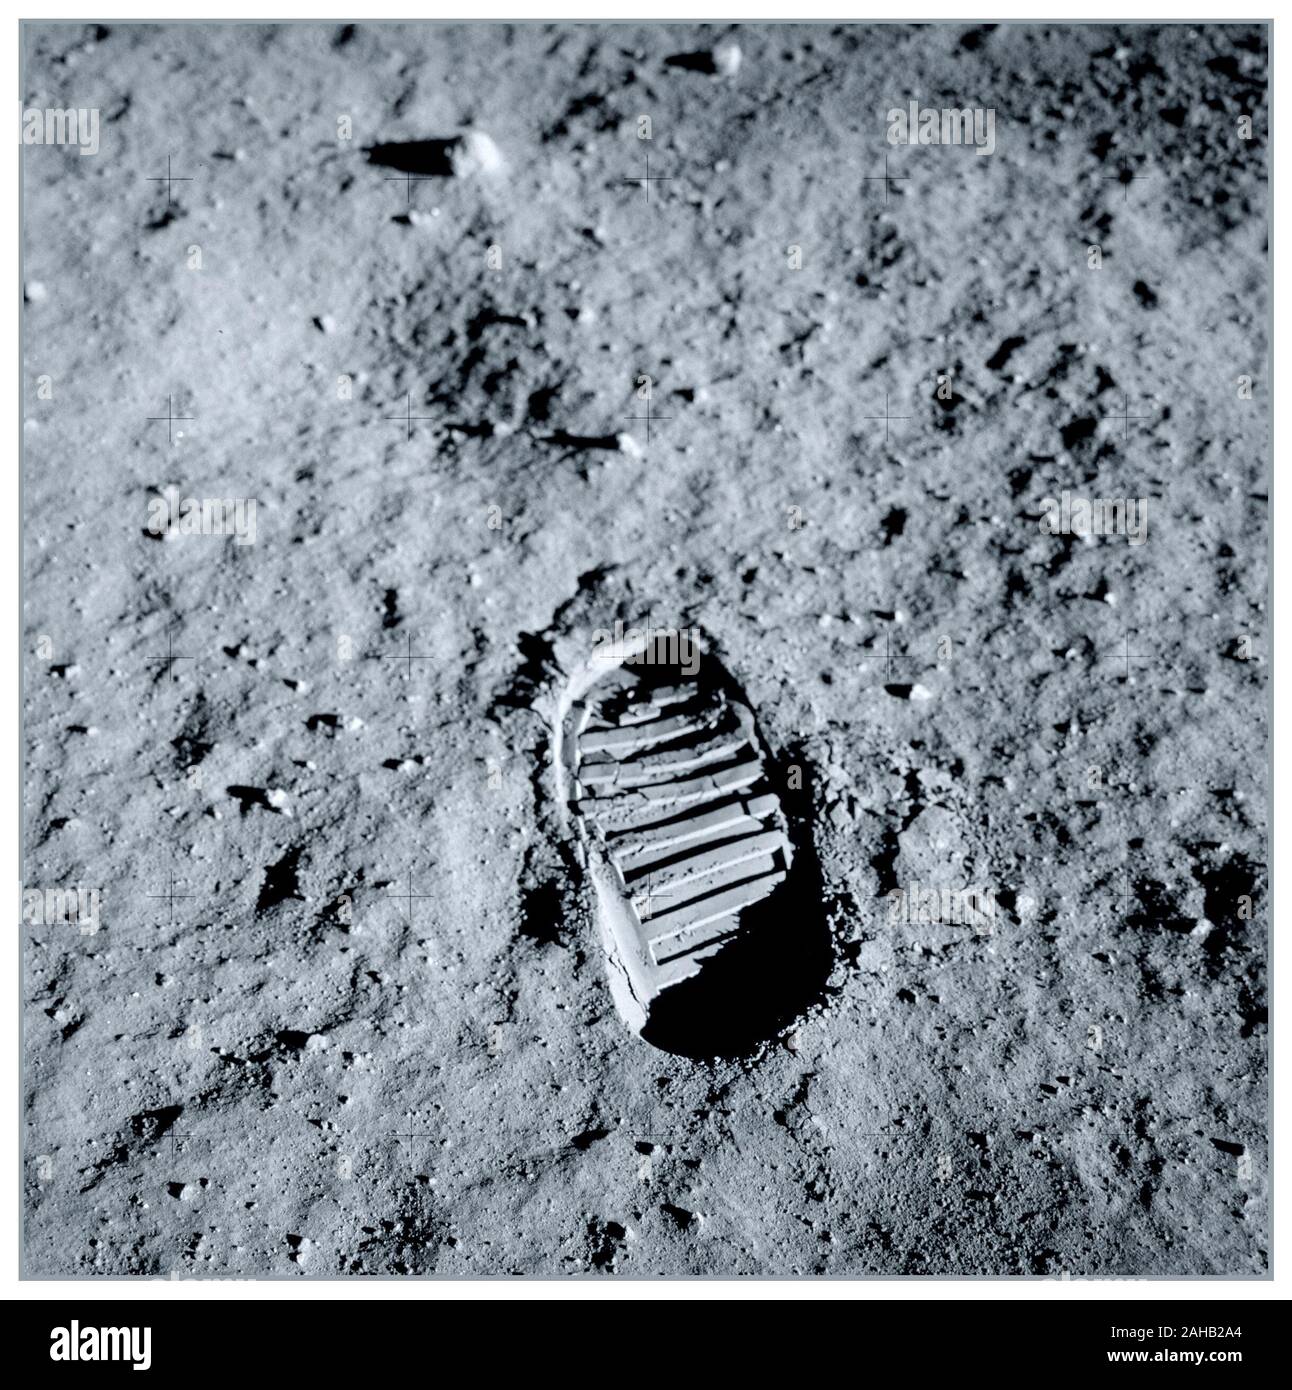 Mond-Bilanz 1969 Apollo 11 Lunar Module Pilot Buzz Aldrin bootprint. Aldrin fotografierte dieses bootprint ungefähr eine Stunde in Ihre lunar Außenbordeinsatz am 20 Juli, 1969, als Teil der Untersuchungen in der bodenmechanik von der Mondoberfläche. Dieses Bild würde später synonym mit der Menschheit Venture in Raum geworden. Ein kleiner Schritt für einen Menschen, aber ein großer Sprung für die Menschheit. Stockfoto